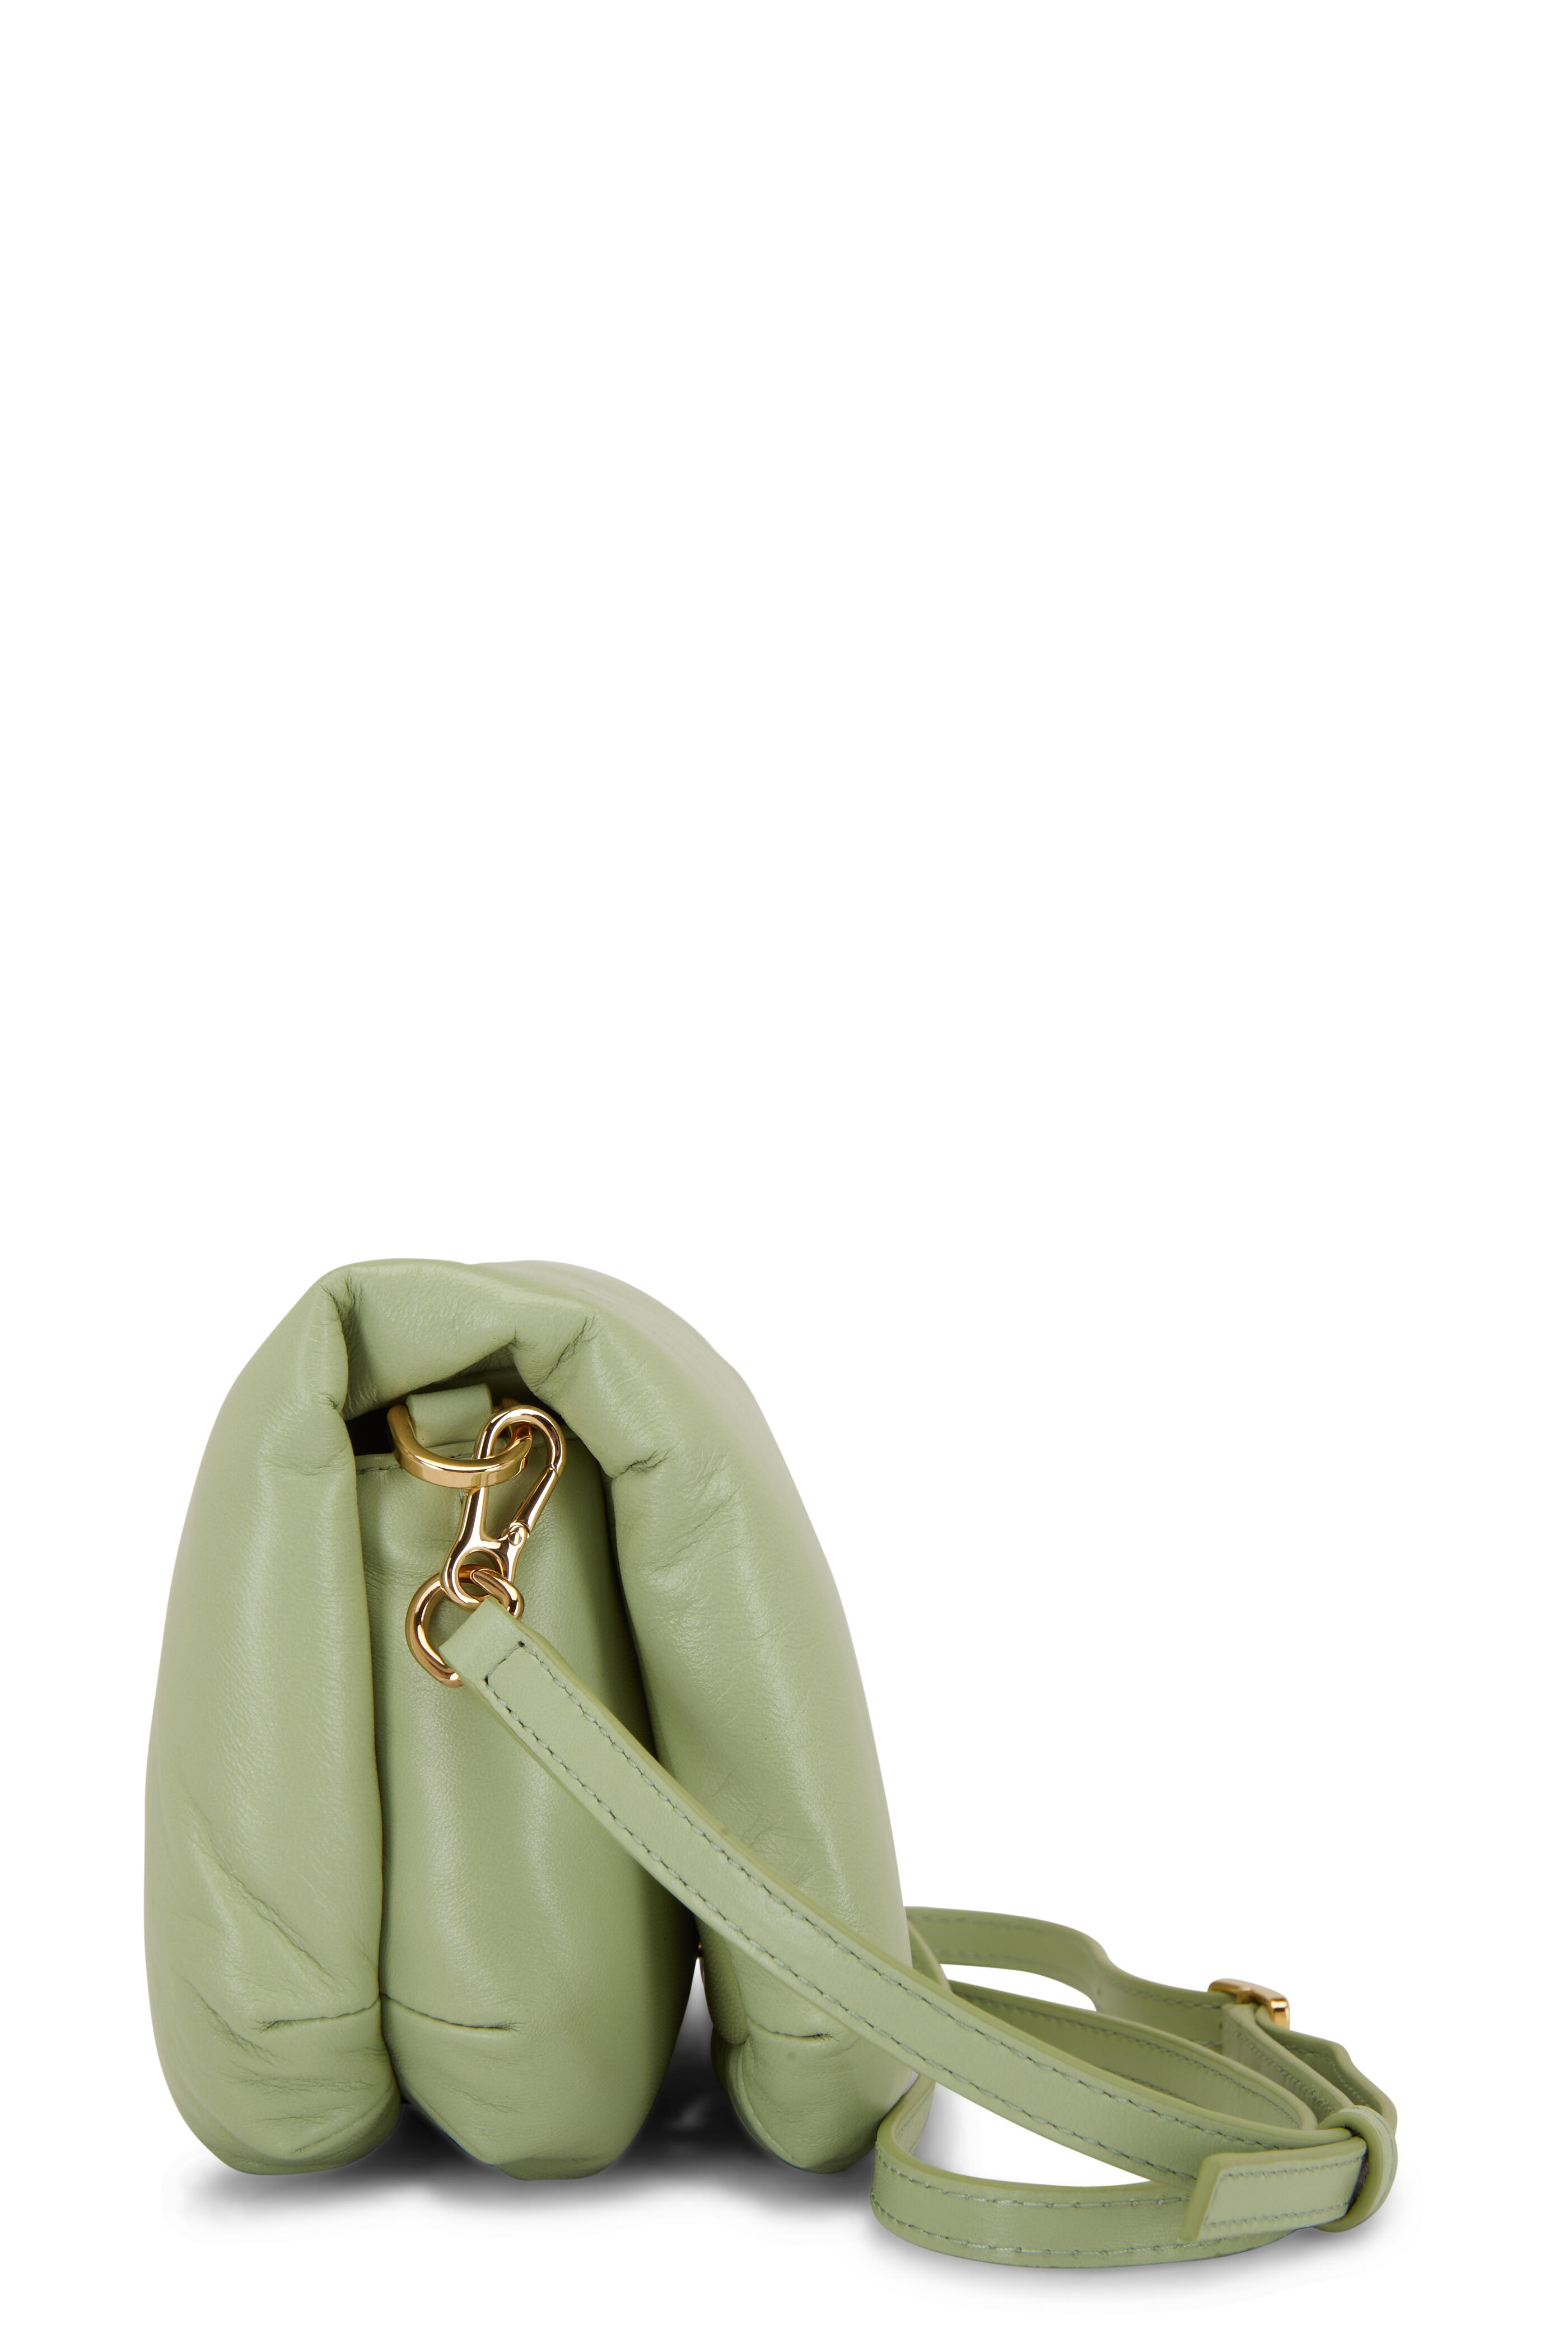 Loewe - Goya Lime Green Leather Mini Puffer Bag